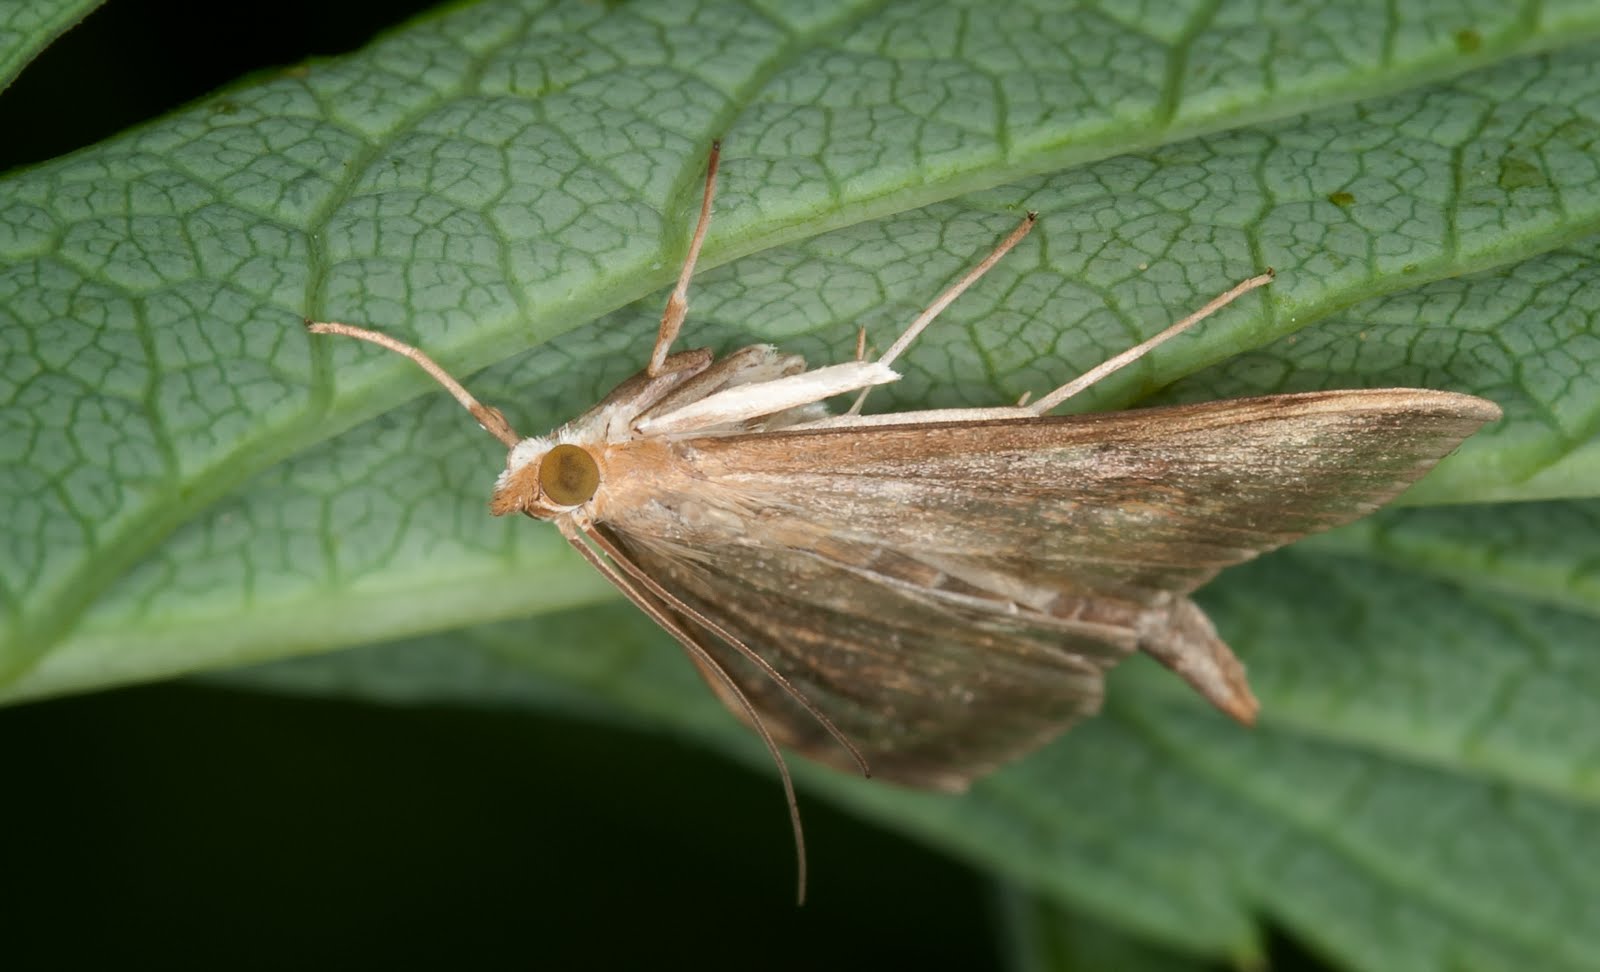 Zen Through a Lens: Marvelous Moths